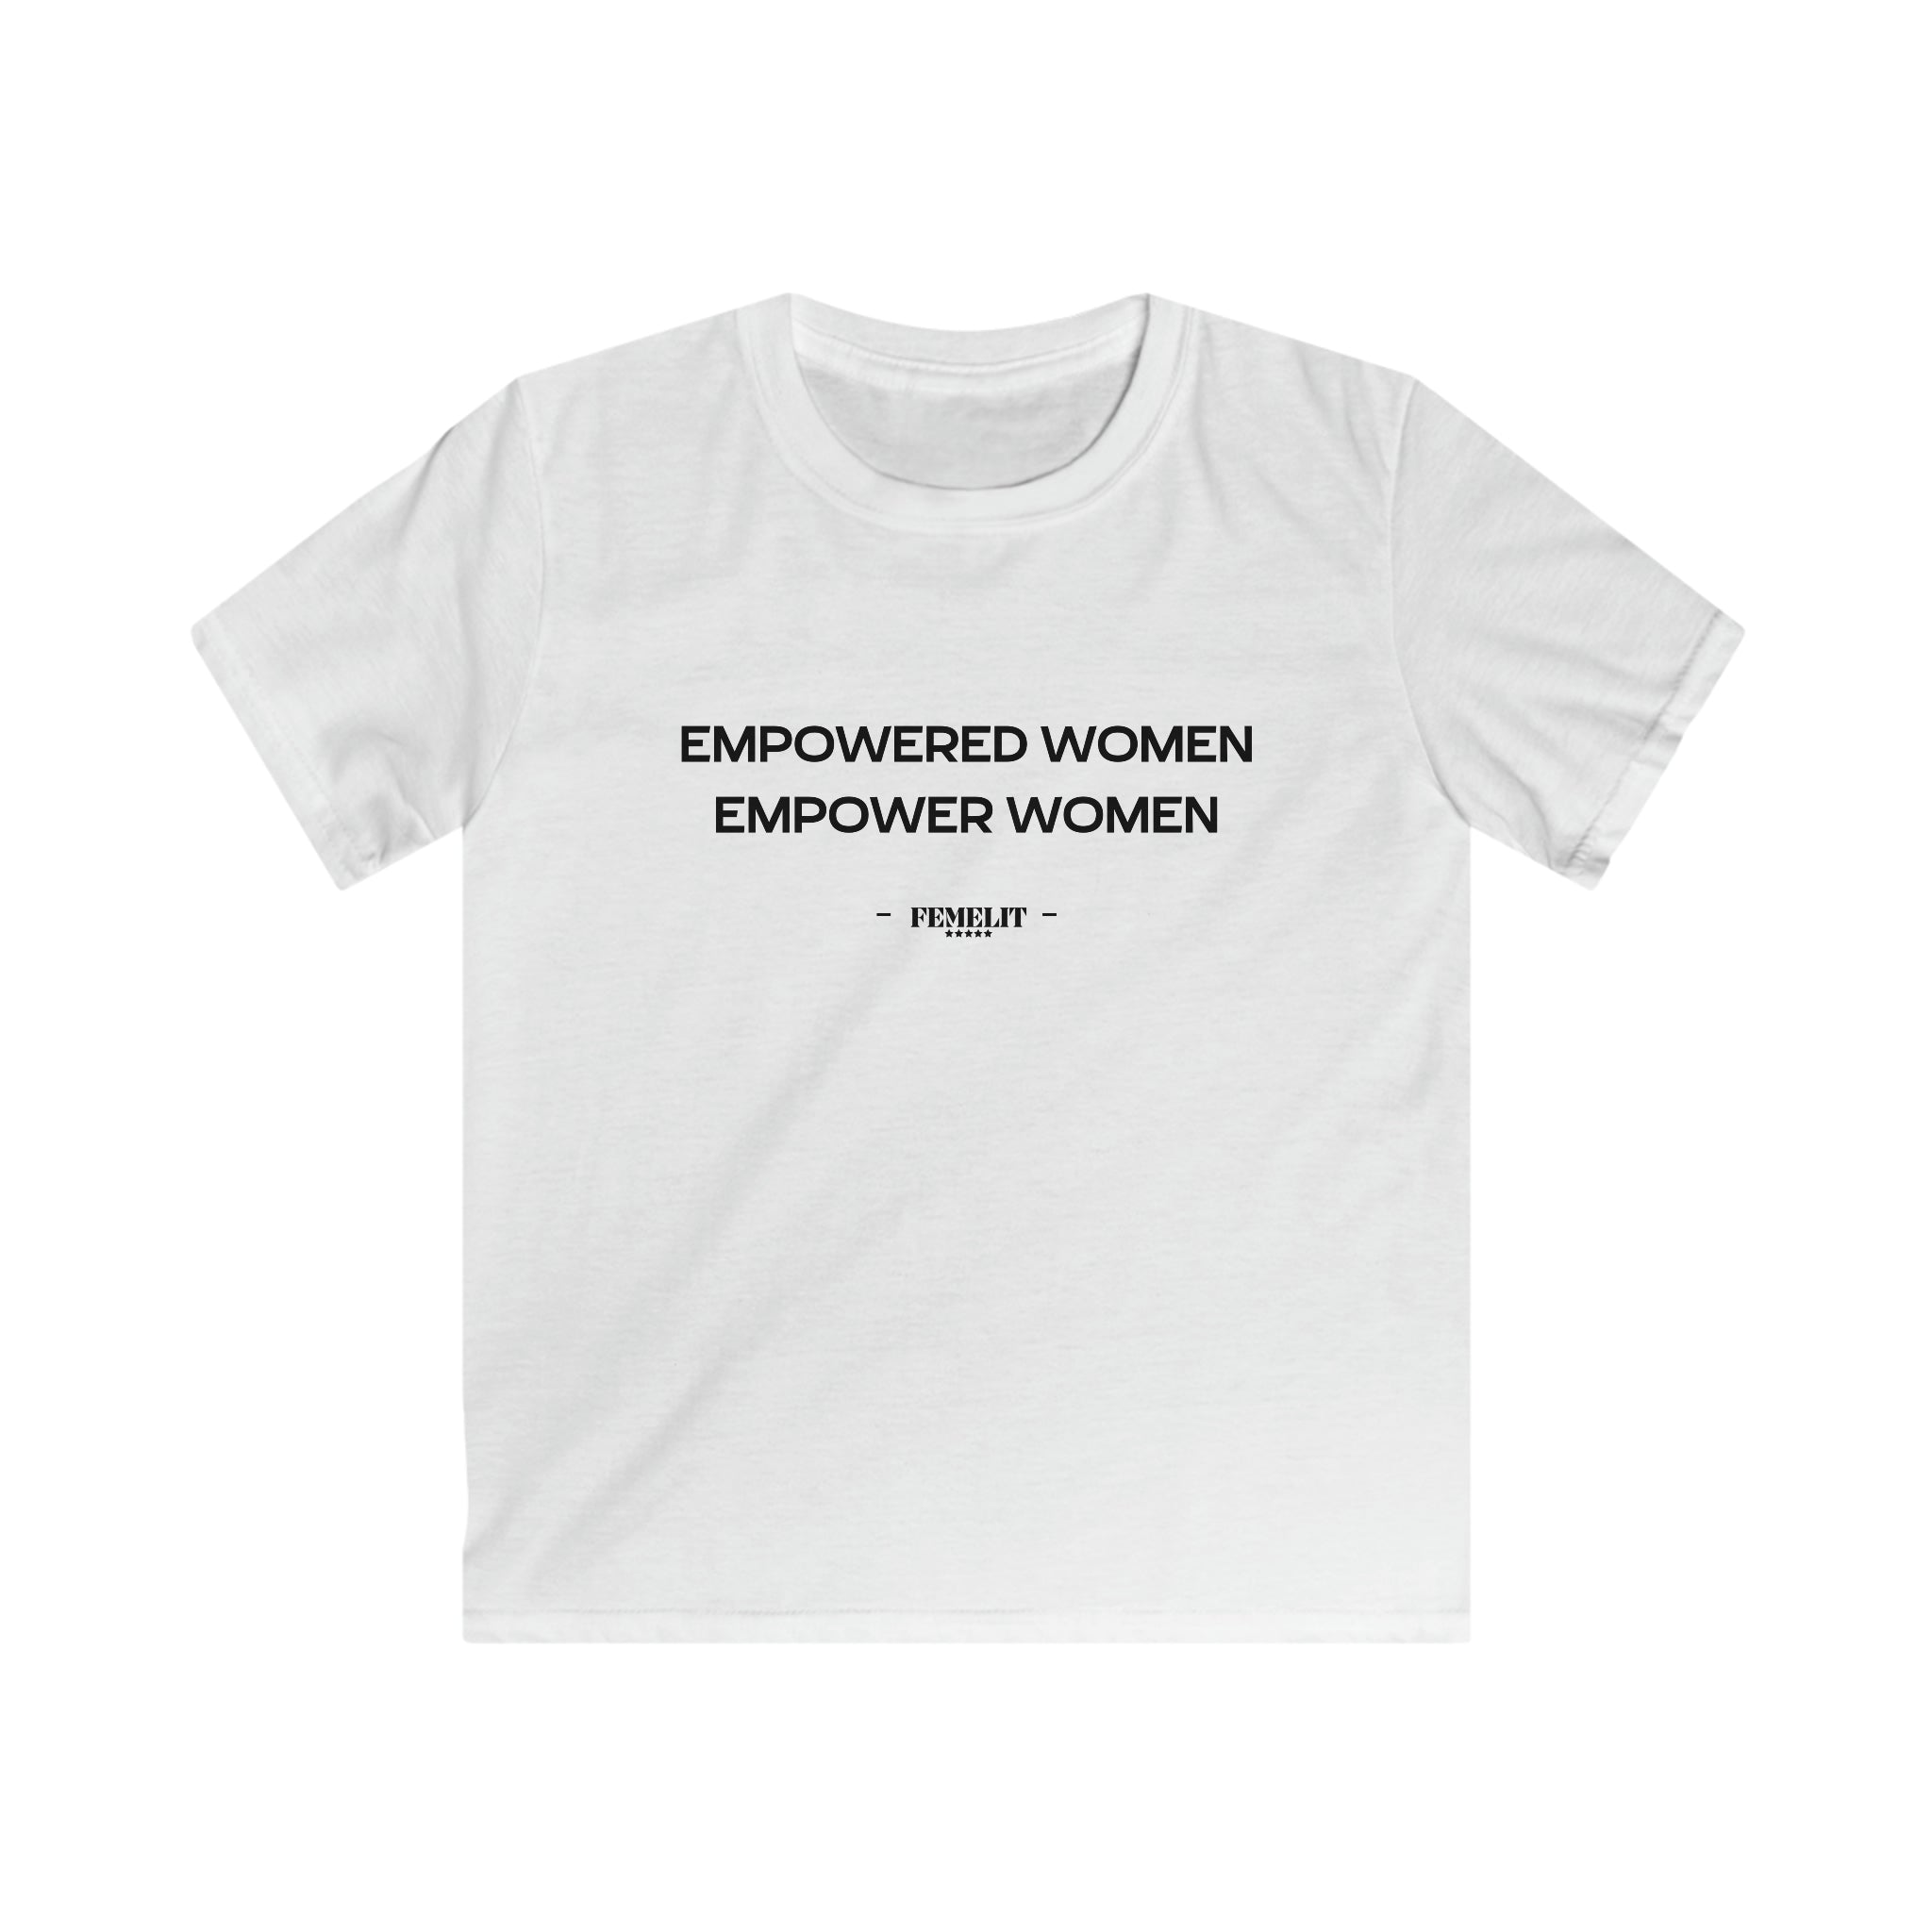 Empower Women